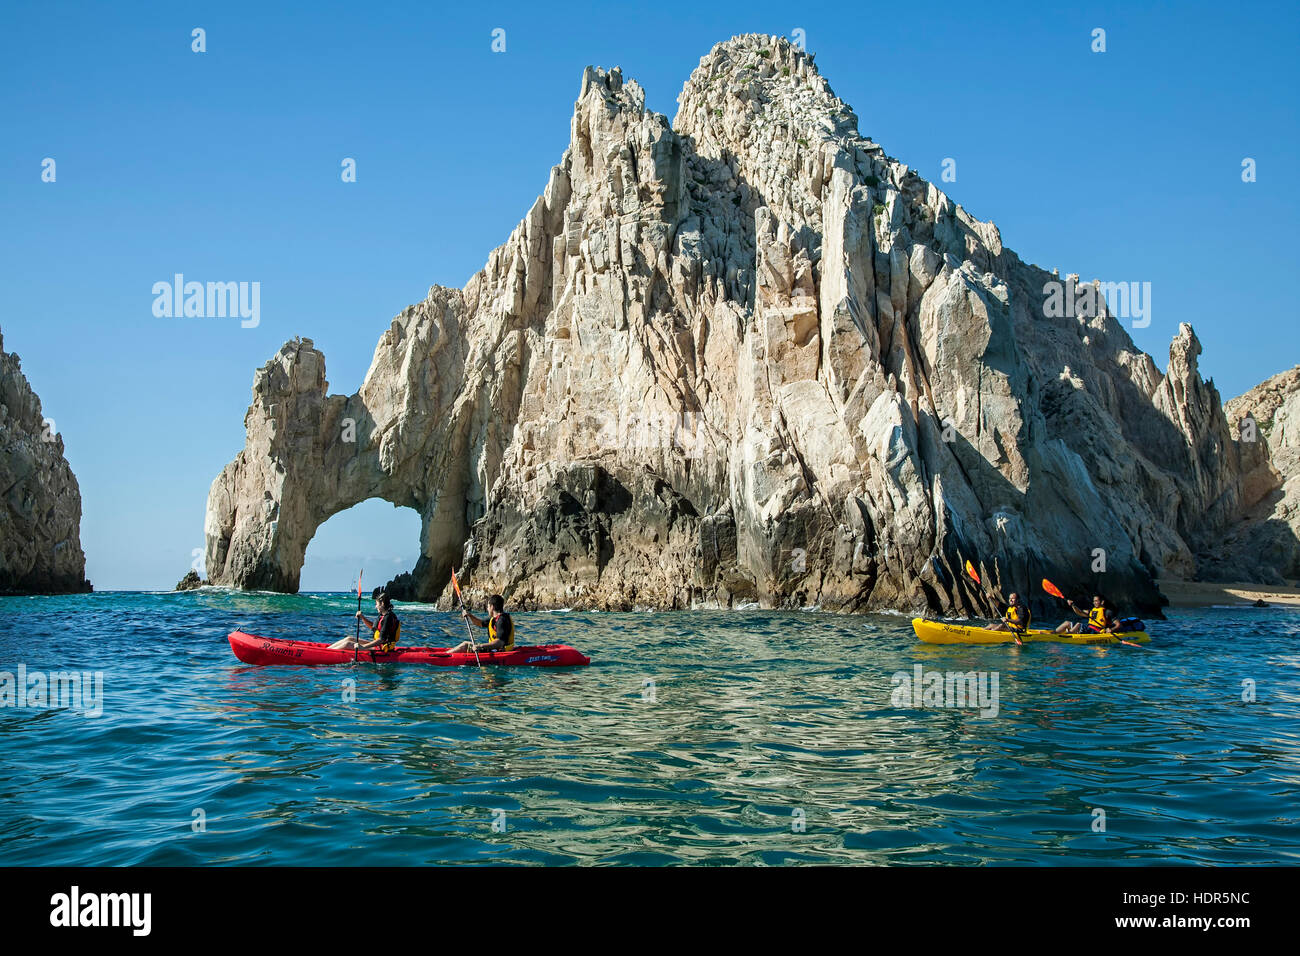 Les kayakistes à El Arco (l'arche), la formation de granite près de Cabo San Lucas, Baja California Sur, Mexique Banque D'Images